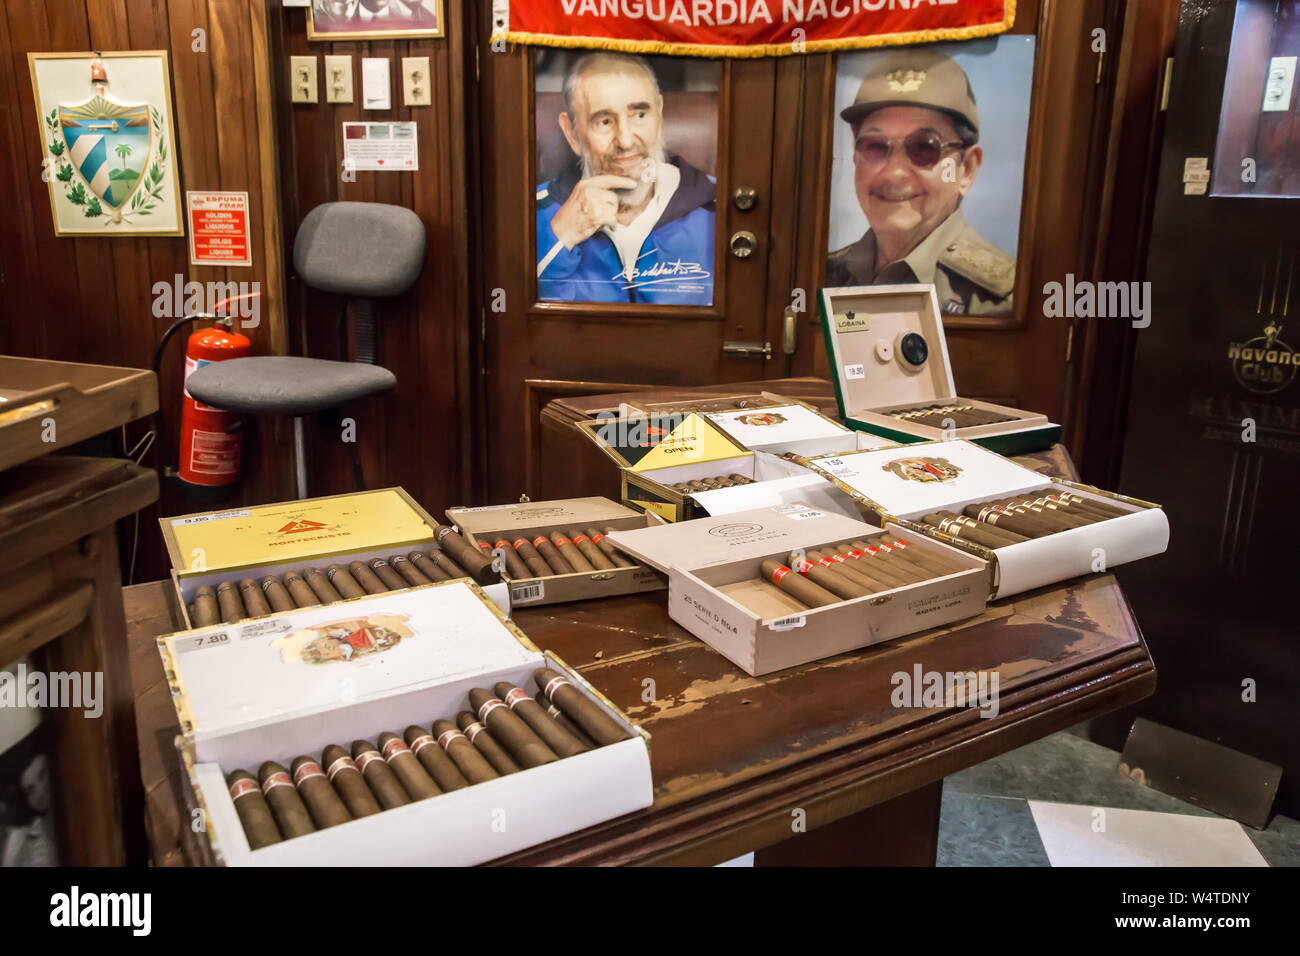 Tavolo pieno di scatole di sigari in Romeo y Julieta cigar shop. Foto di Fidel e Raul Castro in background. Foto Stock